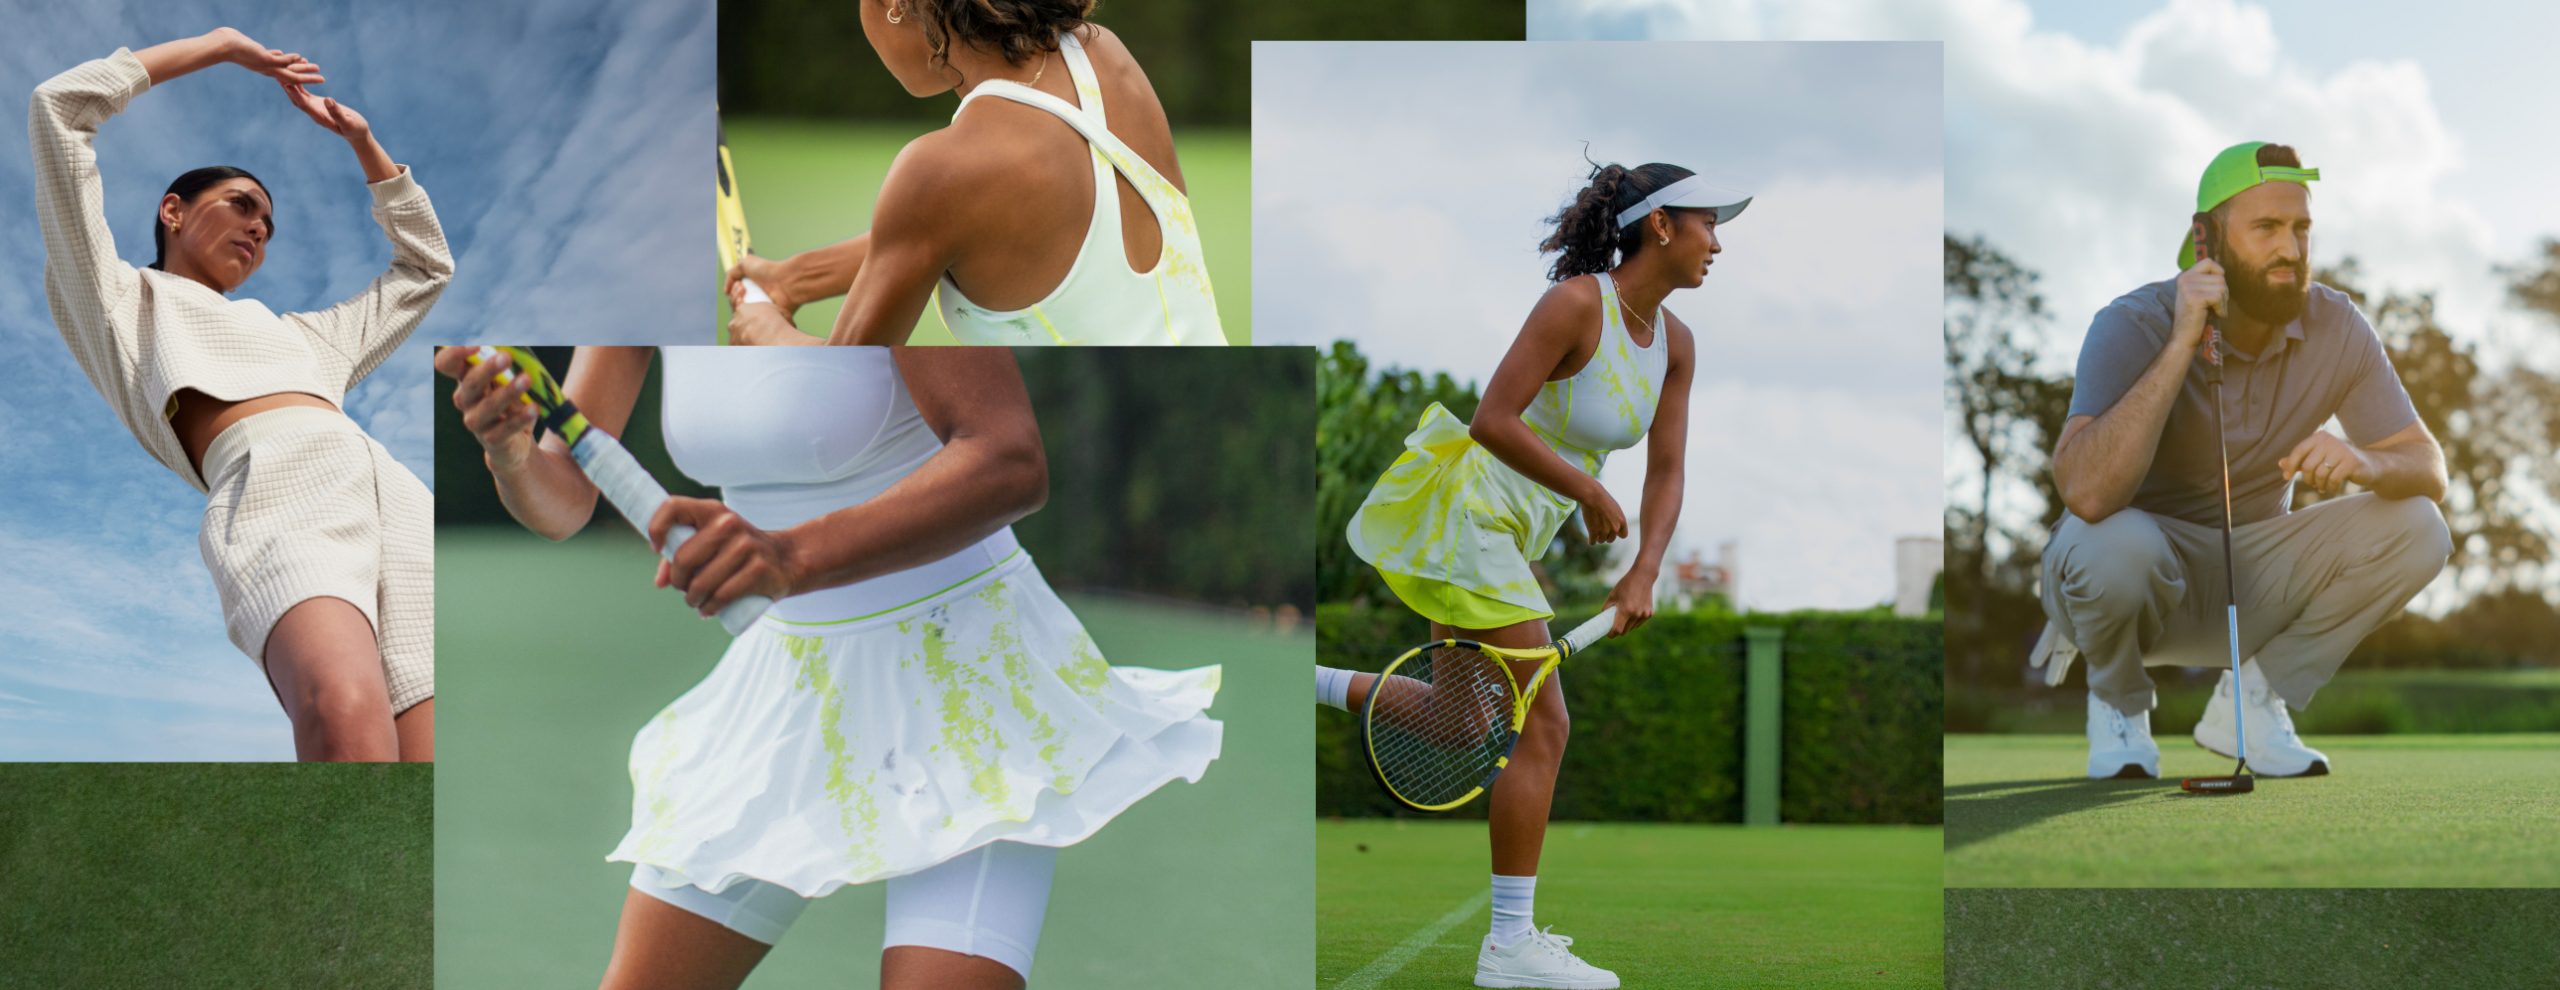 https://www.nylon.com.sg/wp-content/uploads/2022/05/lululemon-spring-22-tennis-golf-banner-scaled.jpg